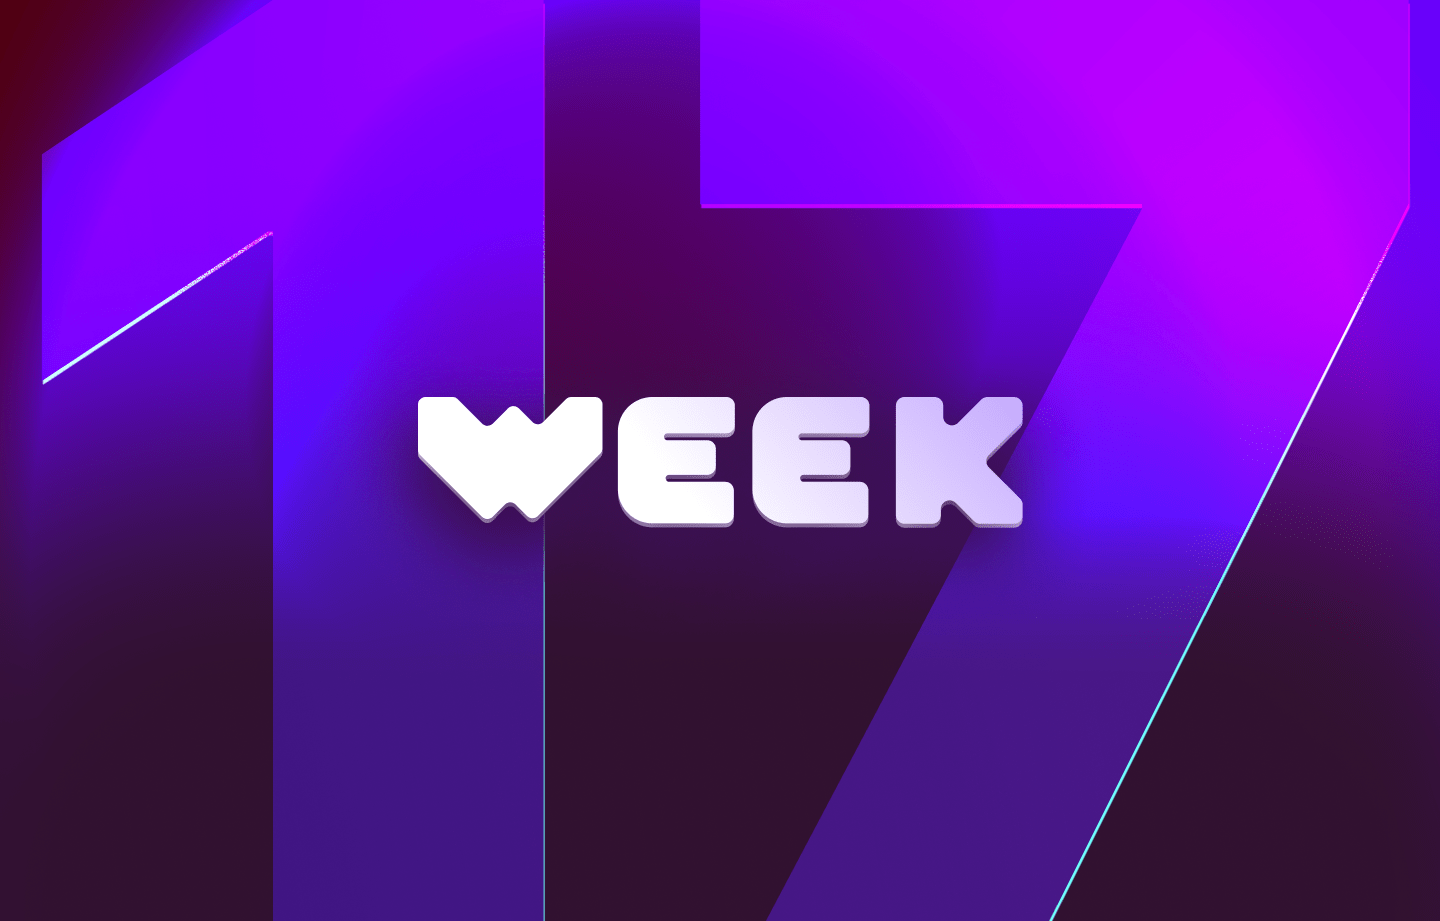 This week in web3 #17